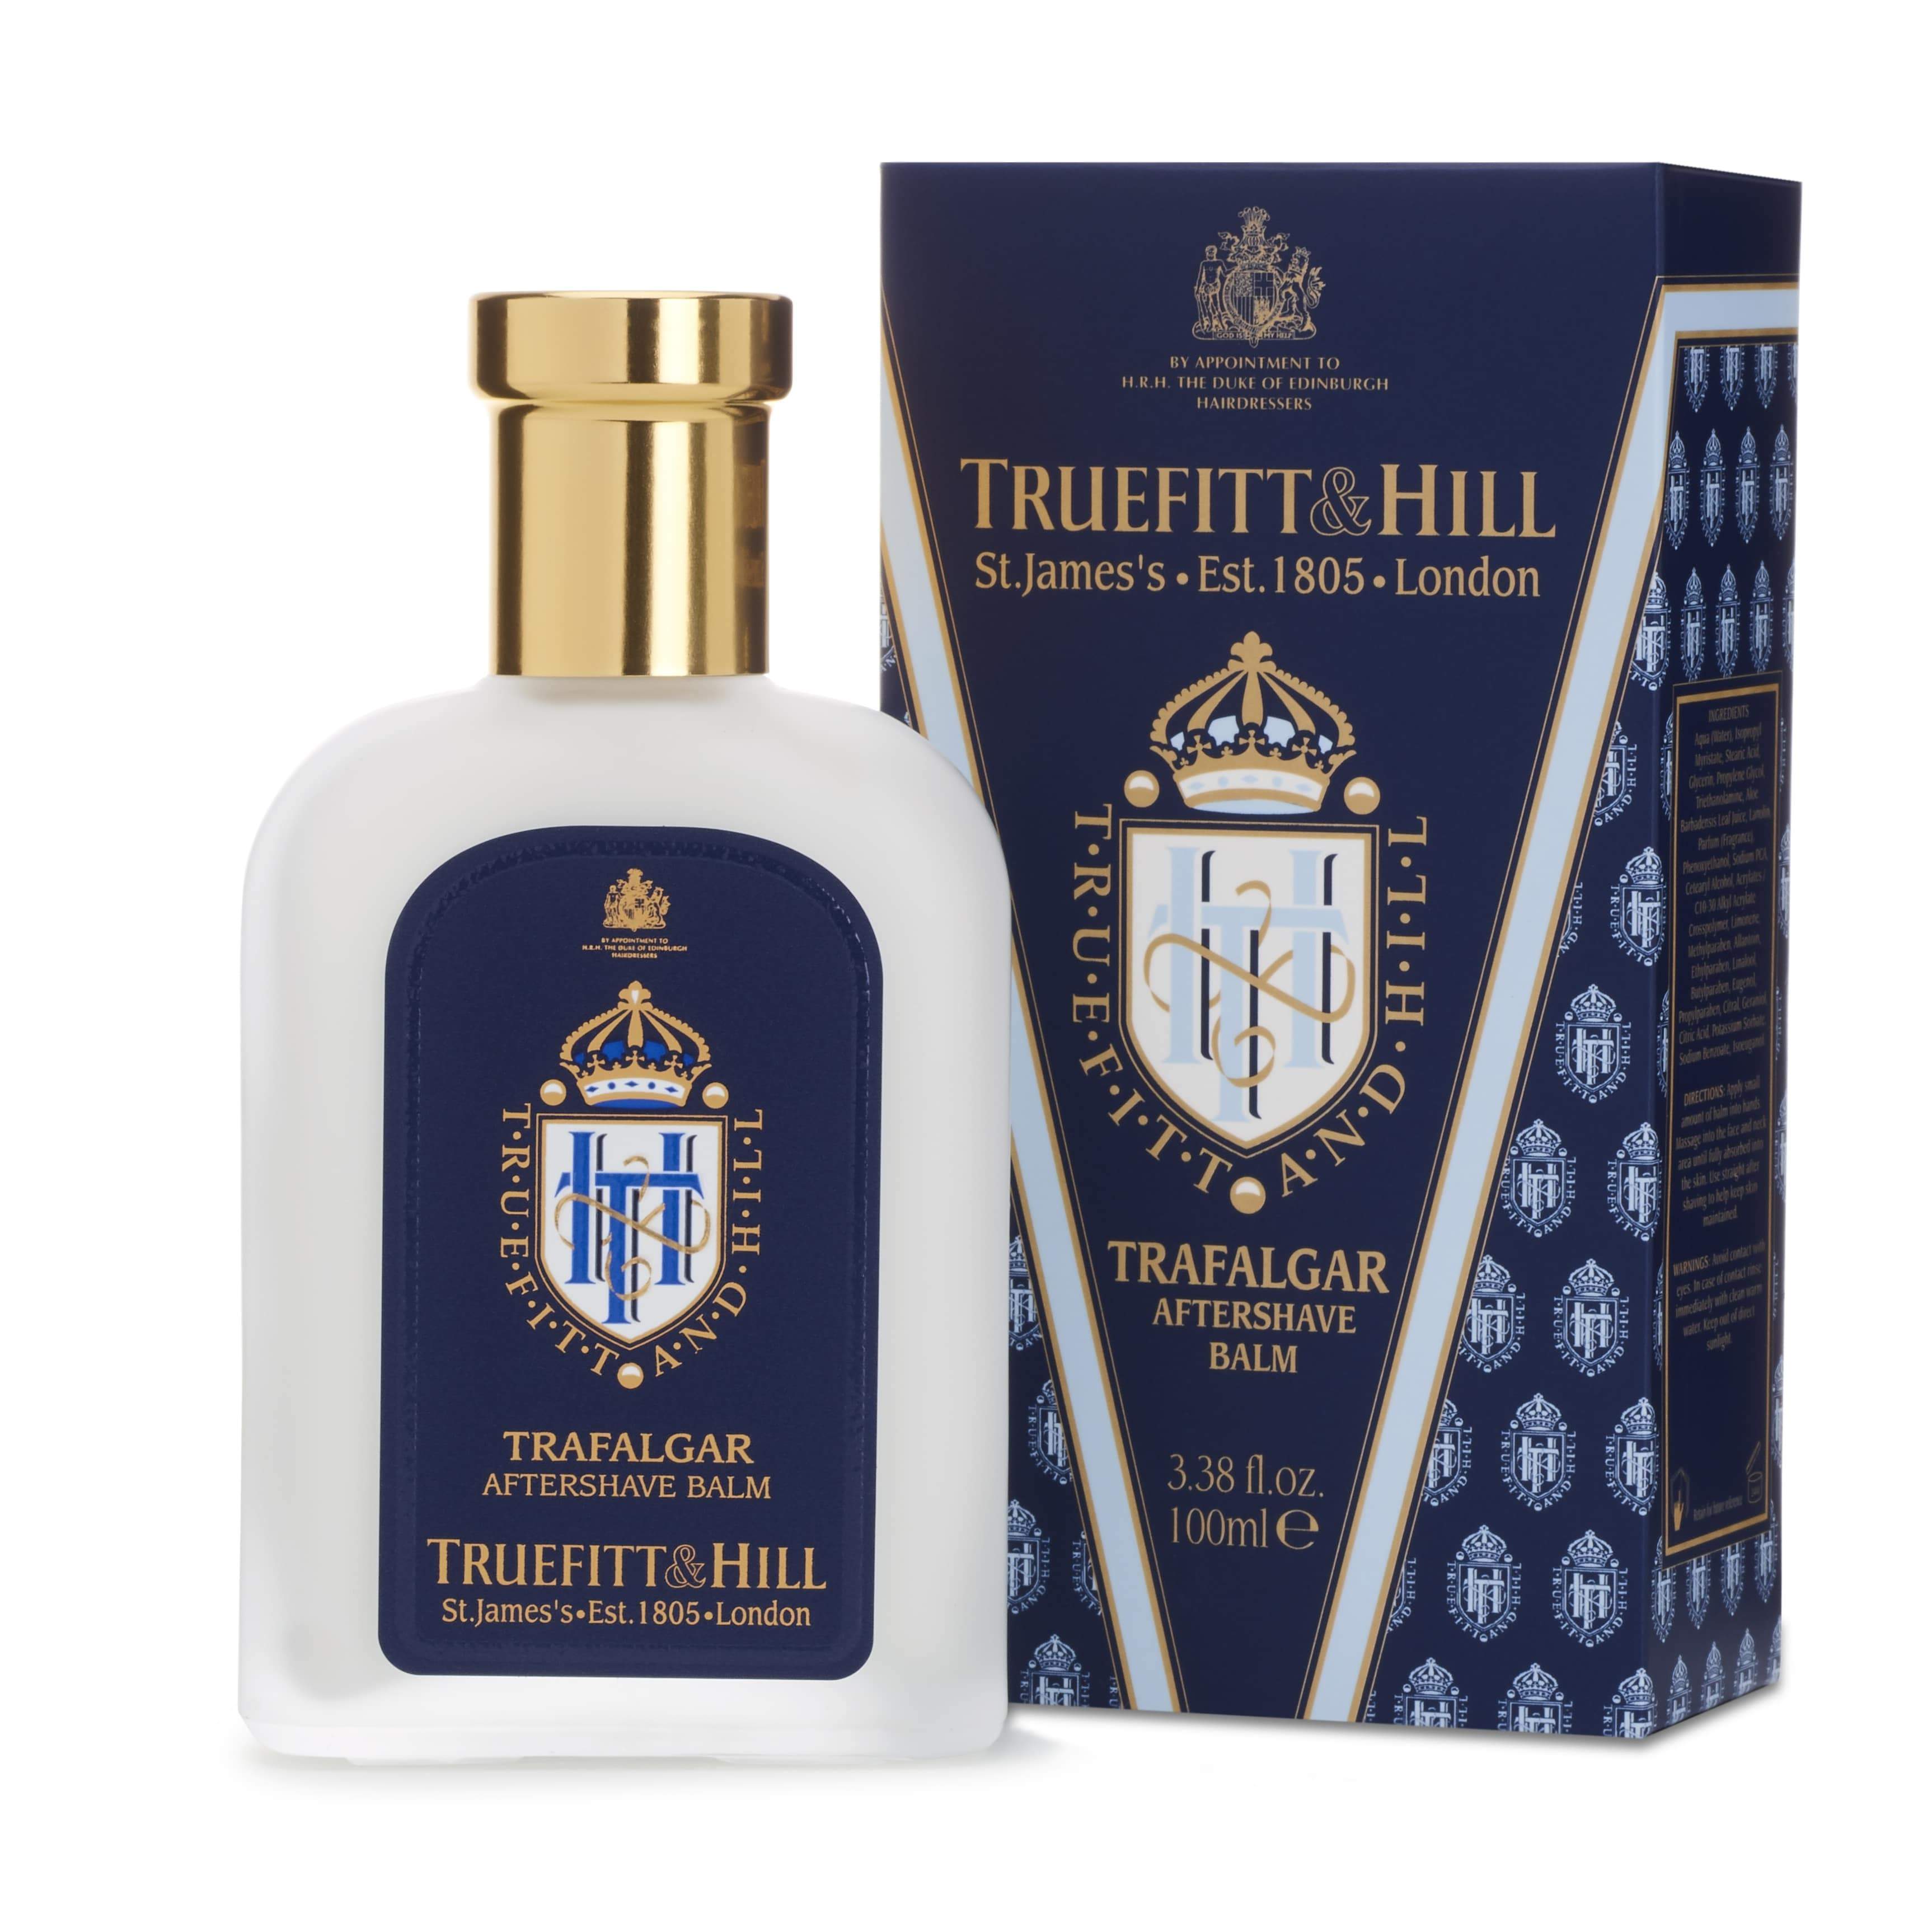 Truefitt & Hill Aftershave Balm Trafalgar